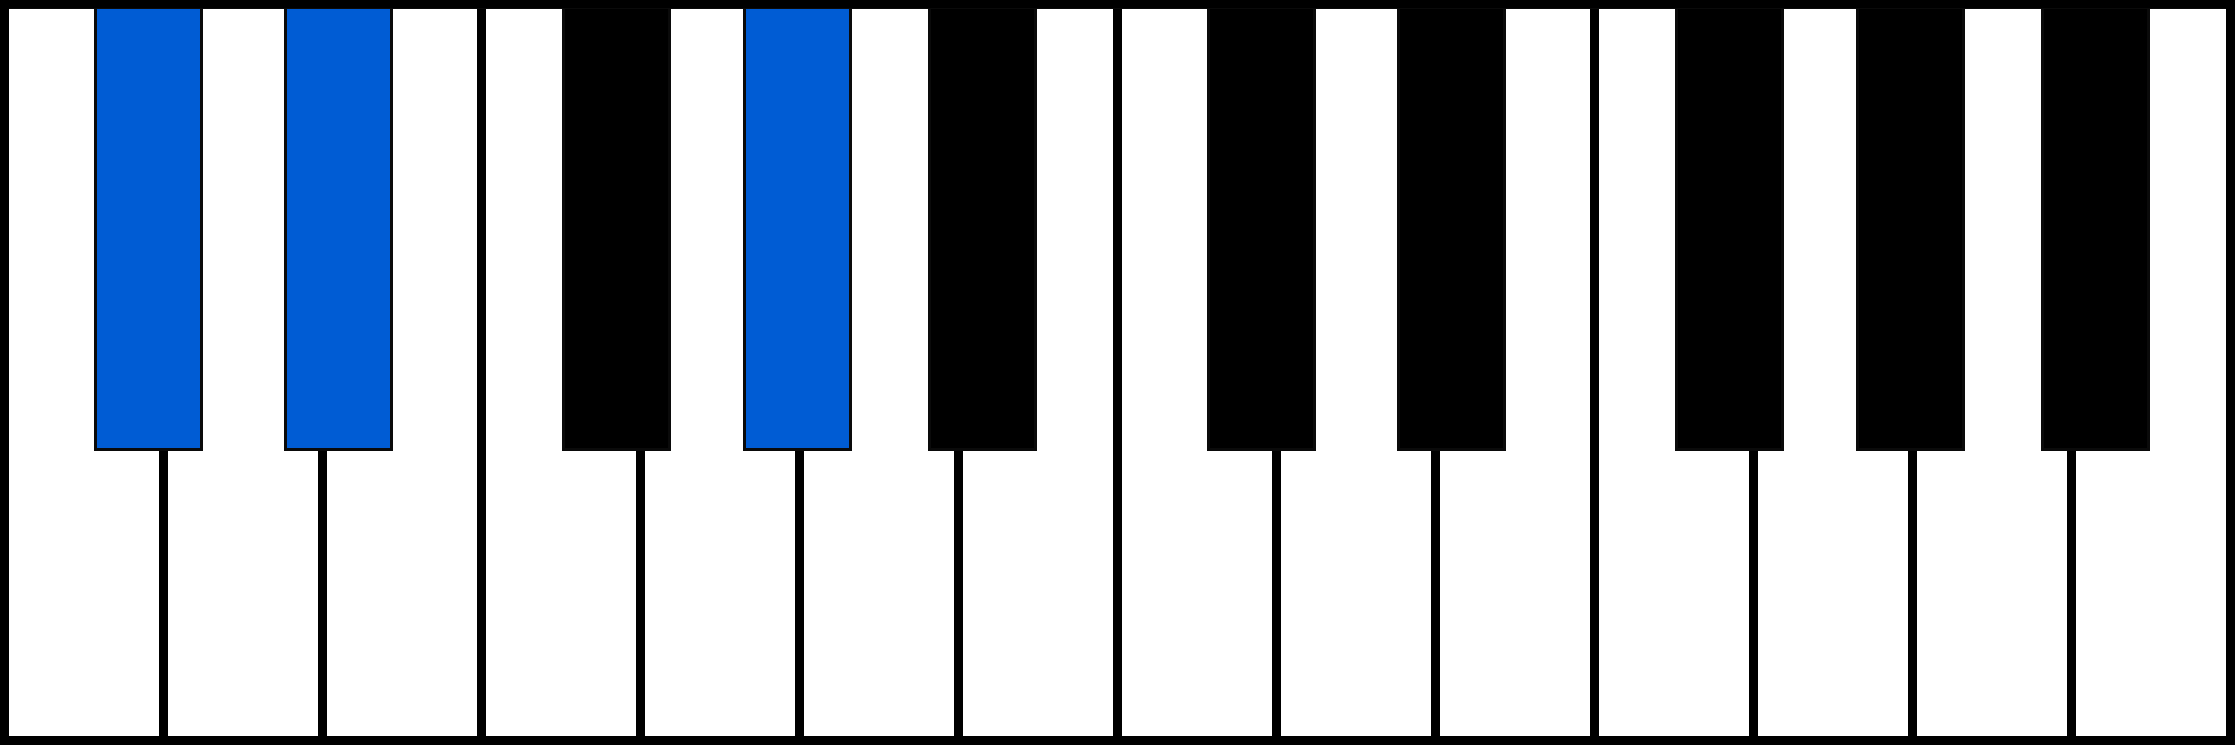 C#sus2 piano chord fingering